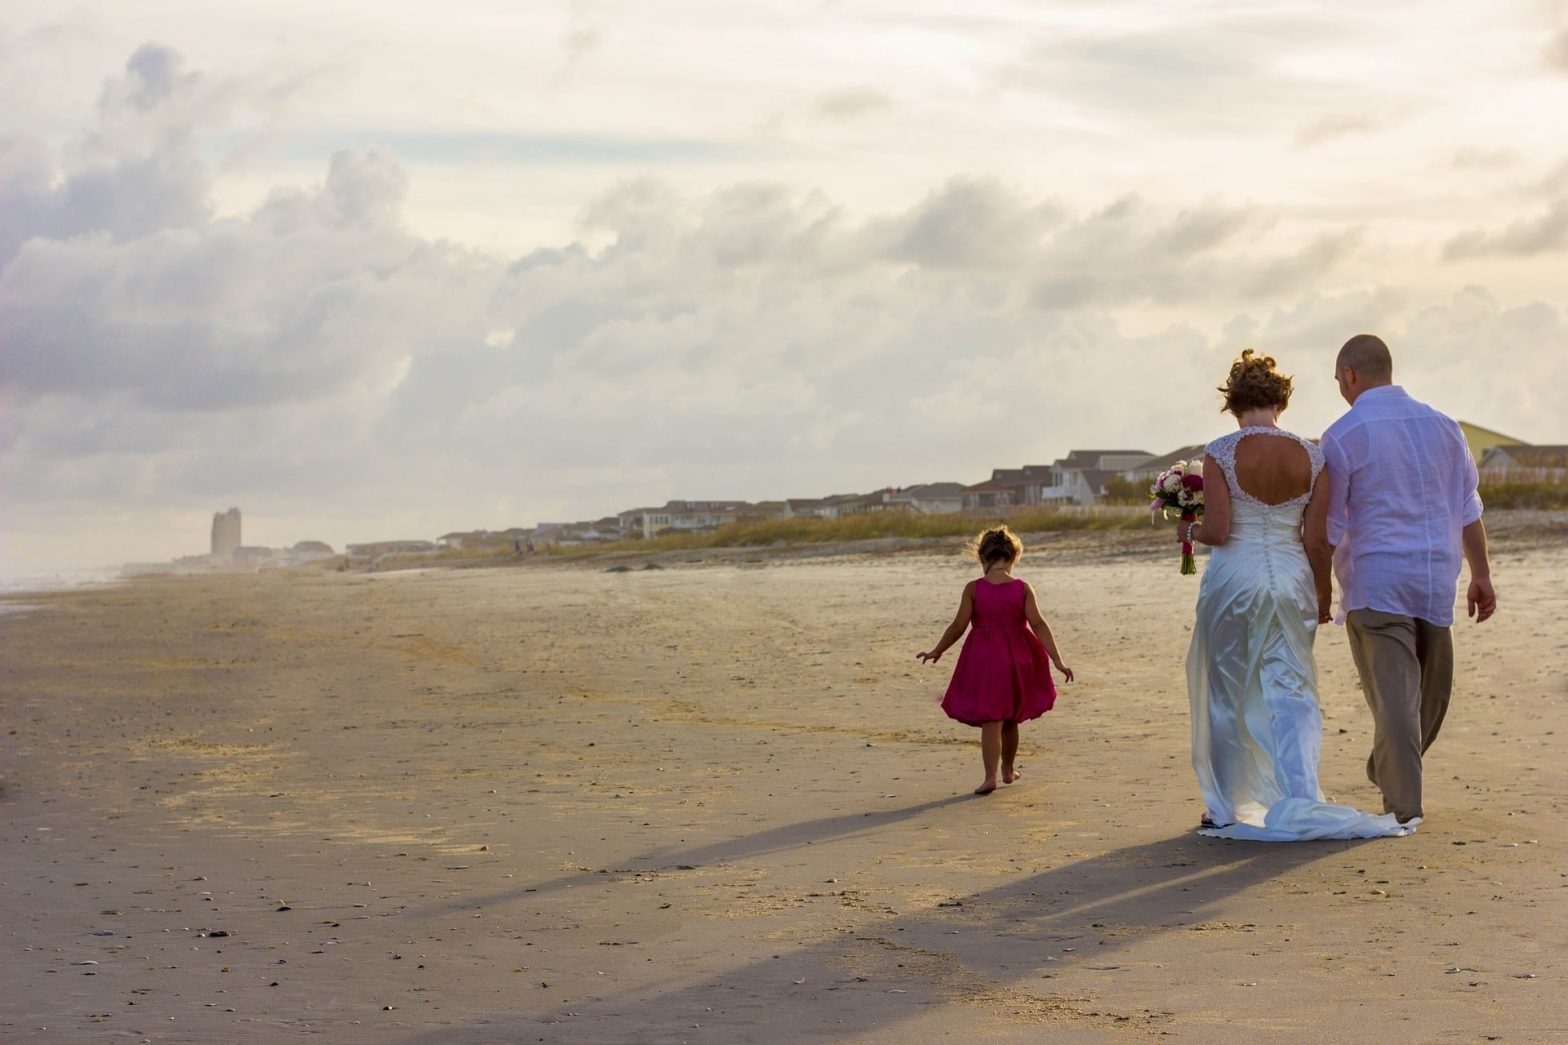 No Children At Wedding - Walking on the beach